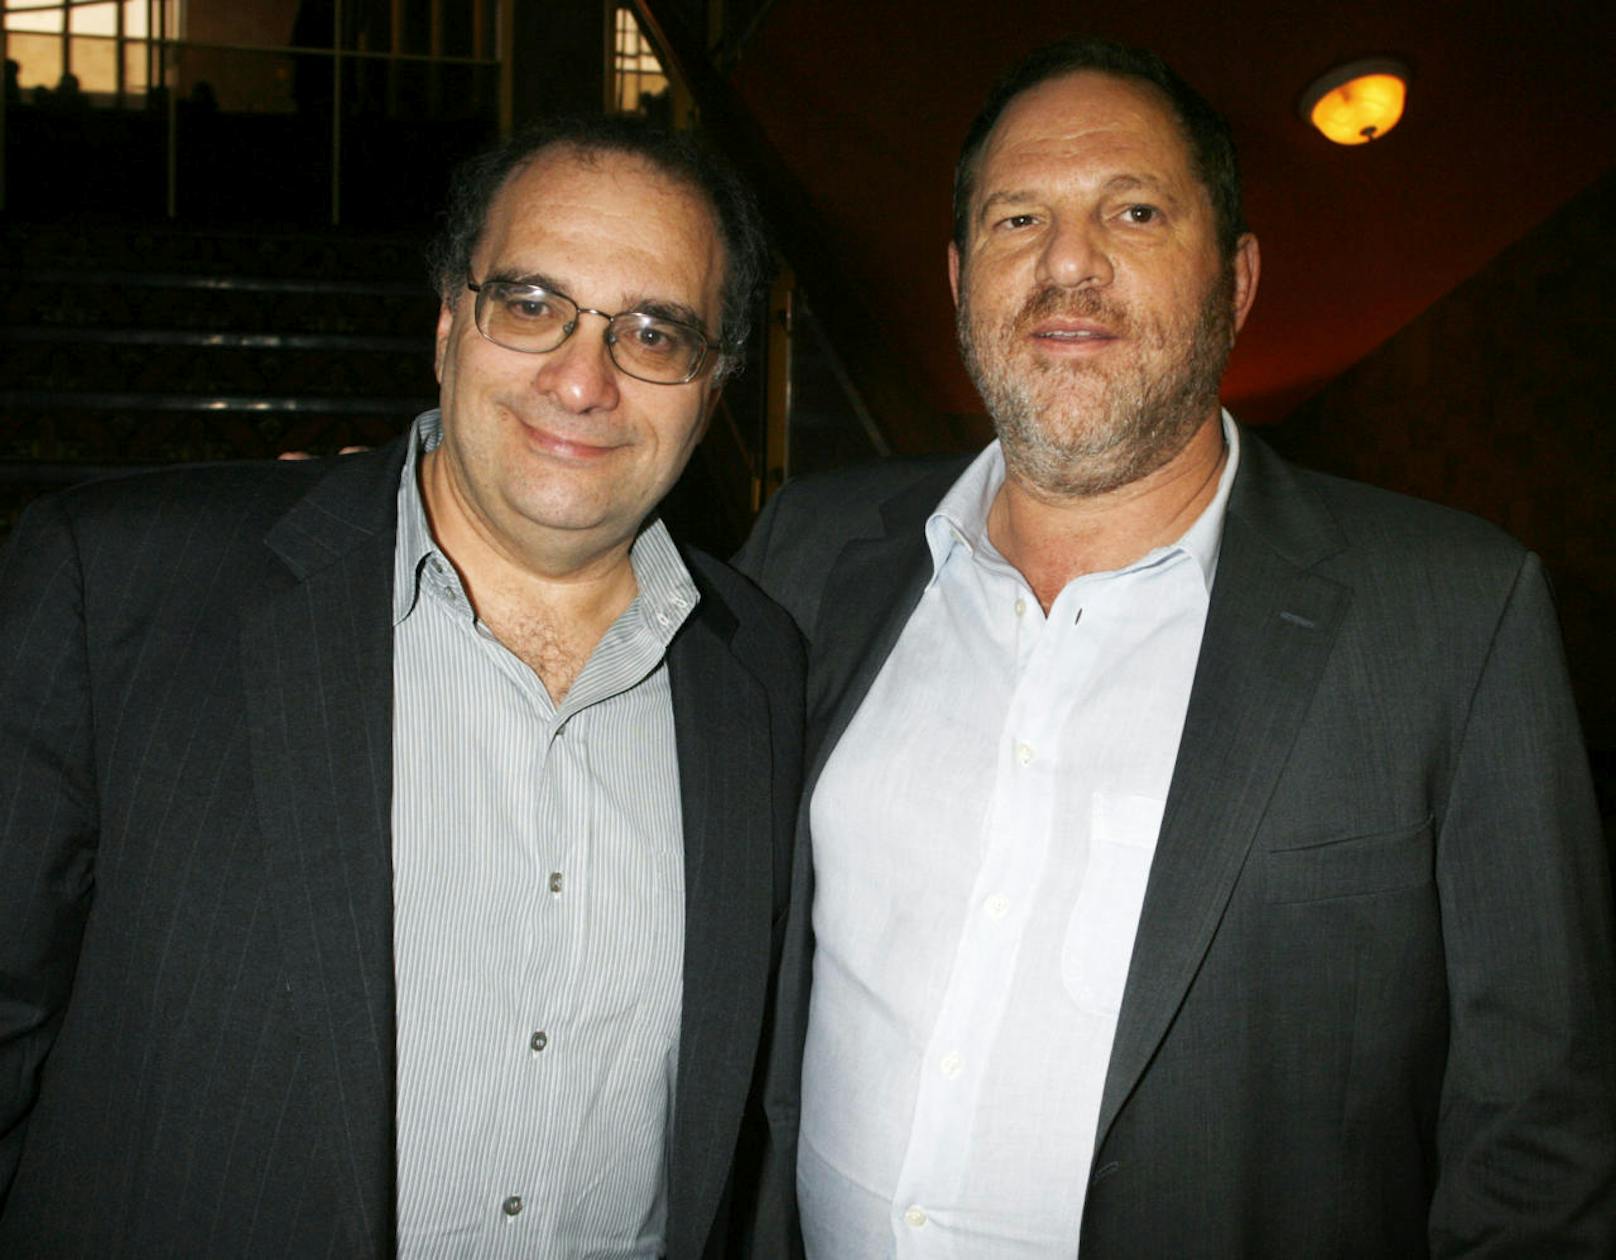 Bob Weinstein, dem Bruder von Harvey Weinstein und Produzent und Mitbegründer der Weinstein Company, wird nun ebenfalls bezichtigt, Frauen belästigt zu haben. Amanda Segel, die Produzentin der US-amerikanischen Serie 'Der Nebel', bezeichnet sich als ein Opfer dieser Vorfälle.